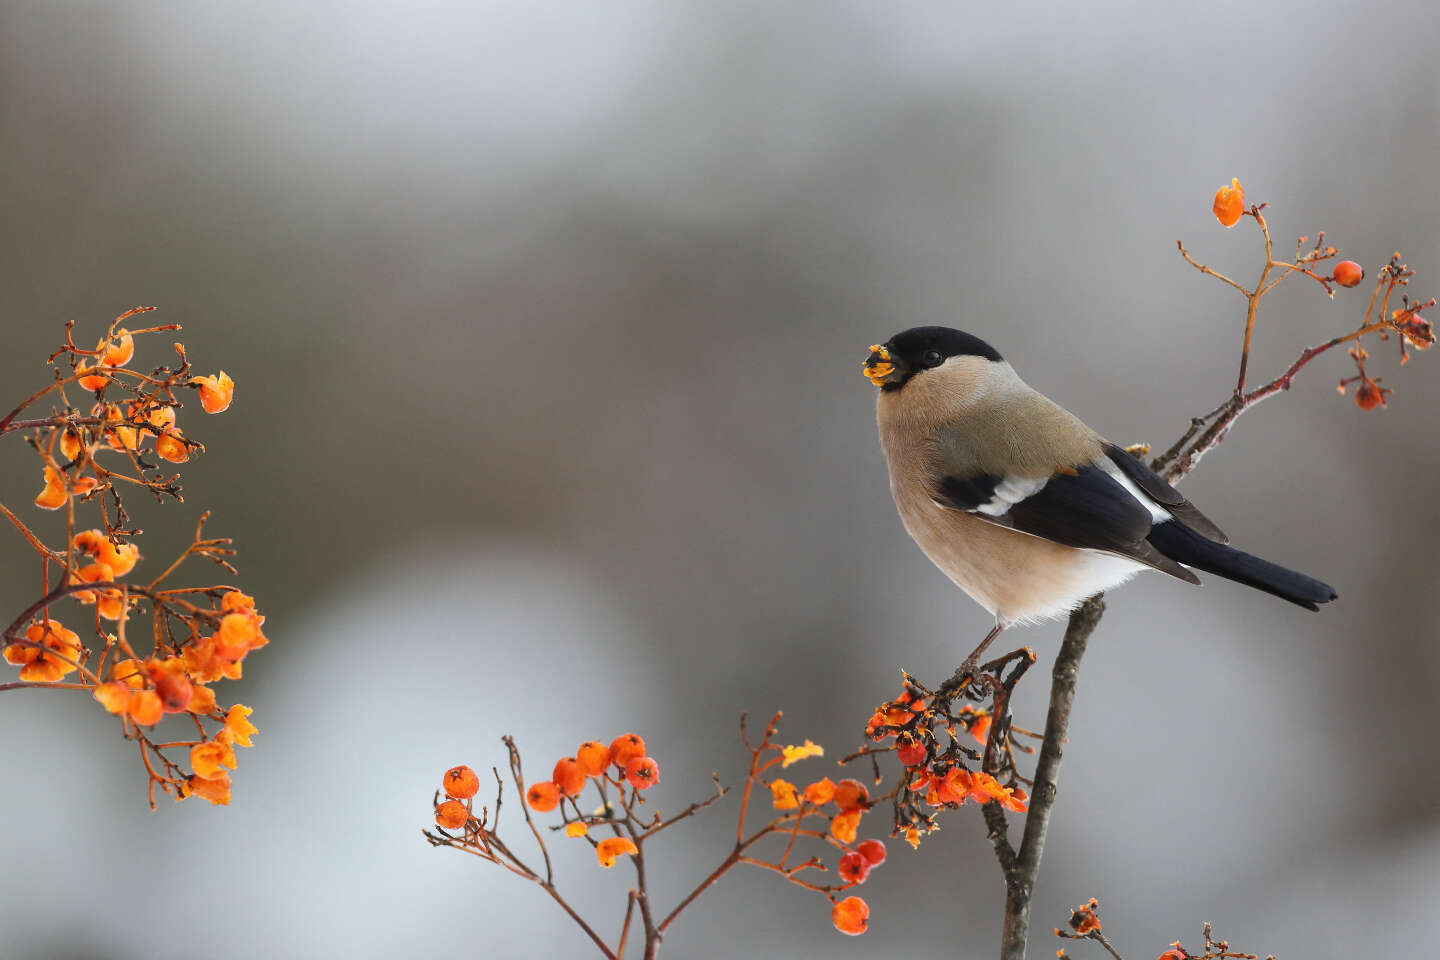 Biodiversité: comment vont les oiseaux de nos jardins?